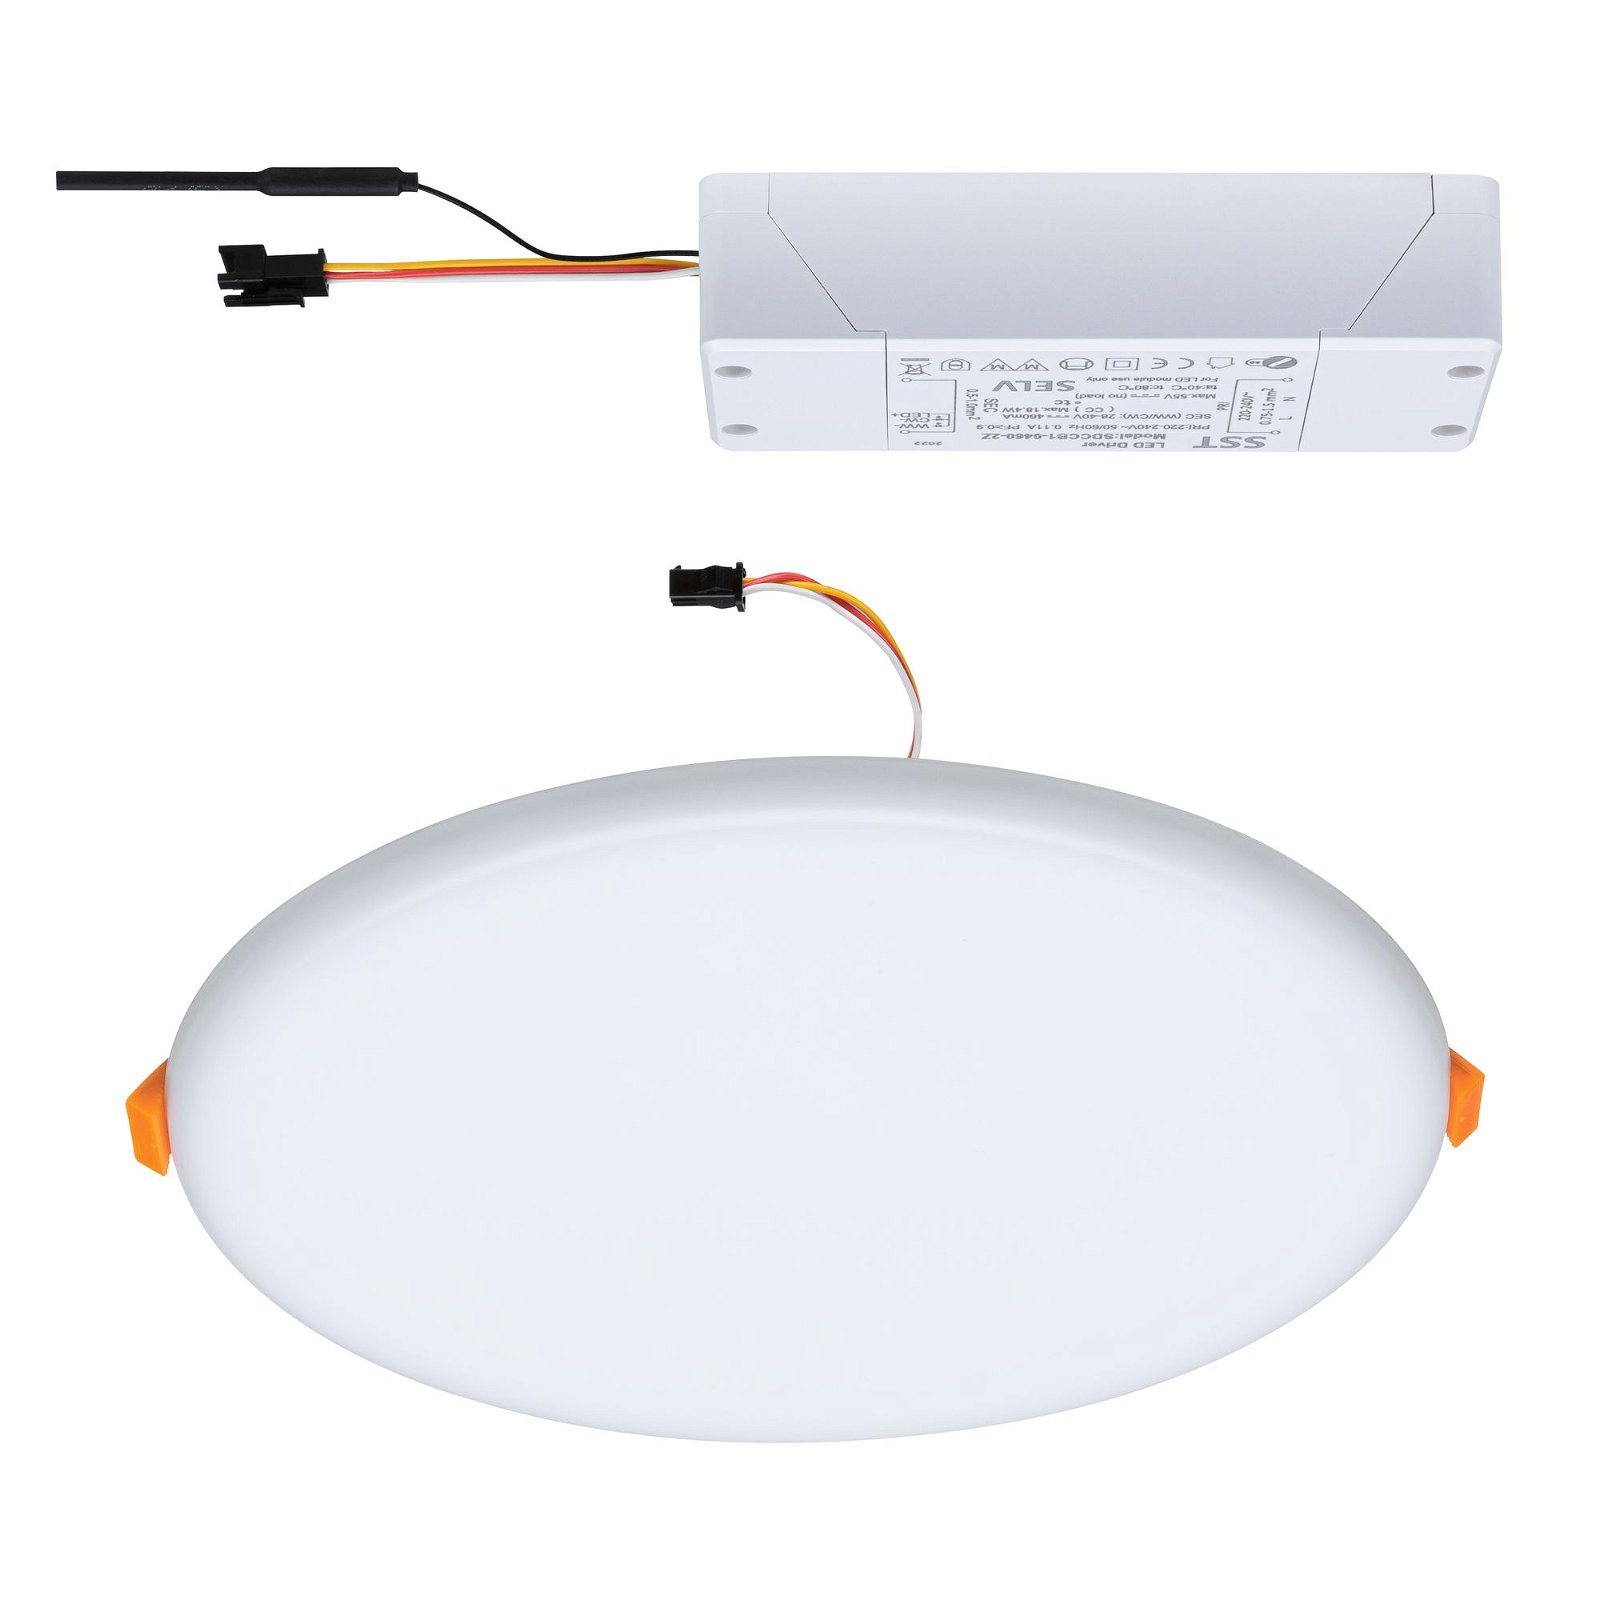 VariFit LED-inbouwpaneel Smart Home Zigbee 3.0 Veluna IP44 rond 215mm 17W 1300lm Tunable White Satijn dimbaar